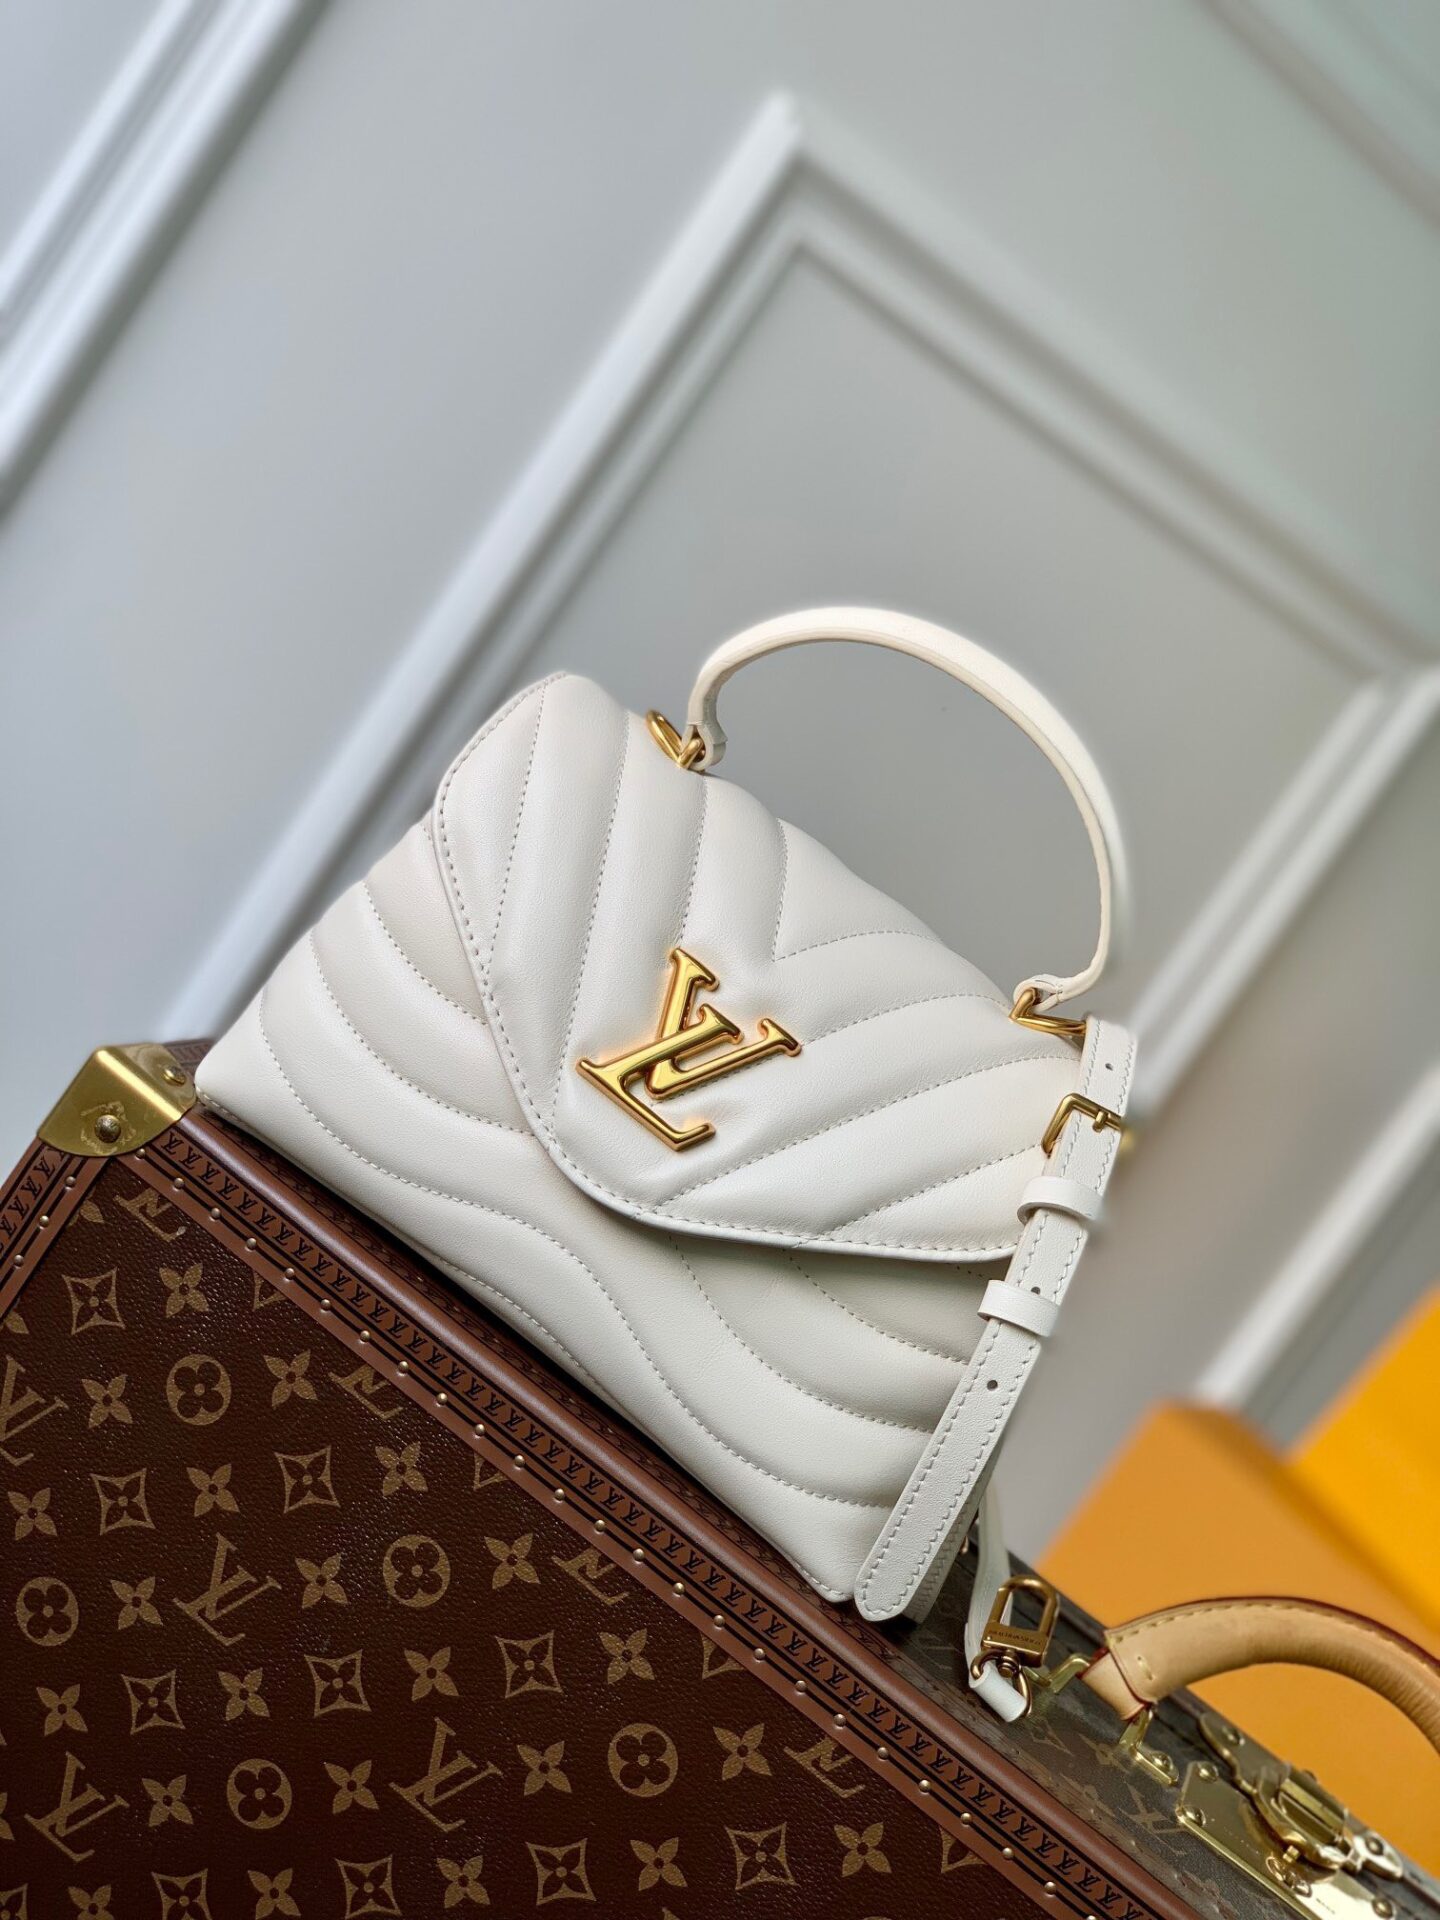 Túi xách LV Louis Vuitton Petite malle souple siêu cấp màu trắng ngà size  20 cm  M45393  Túi Xách Nữ Túi Xách Đẹp Túi Xách Giày Dép Nữ  Bước  Thời Trang